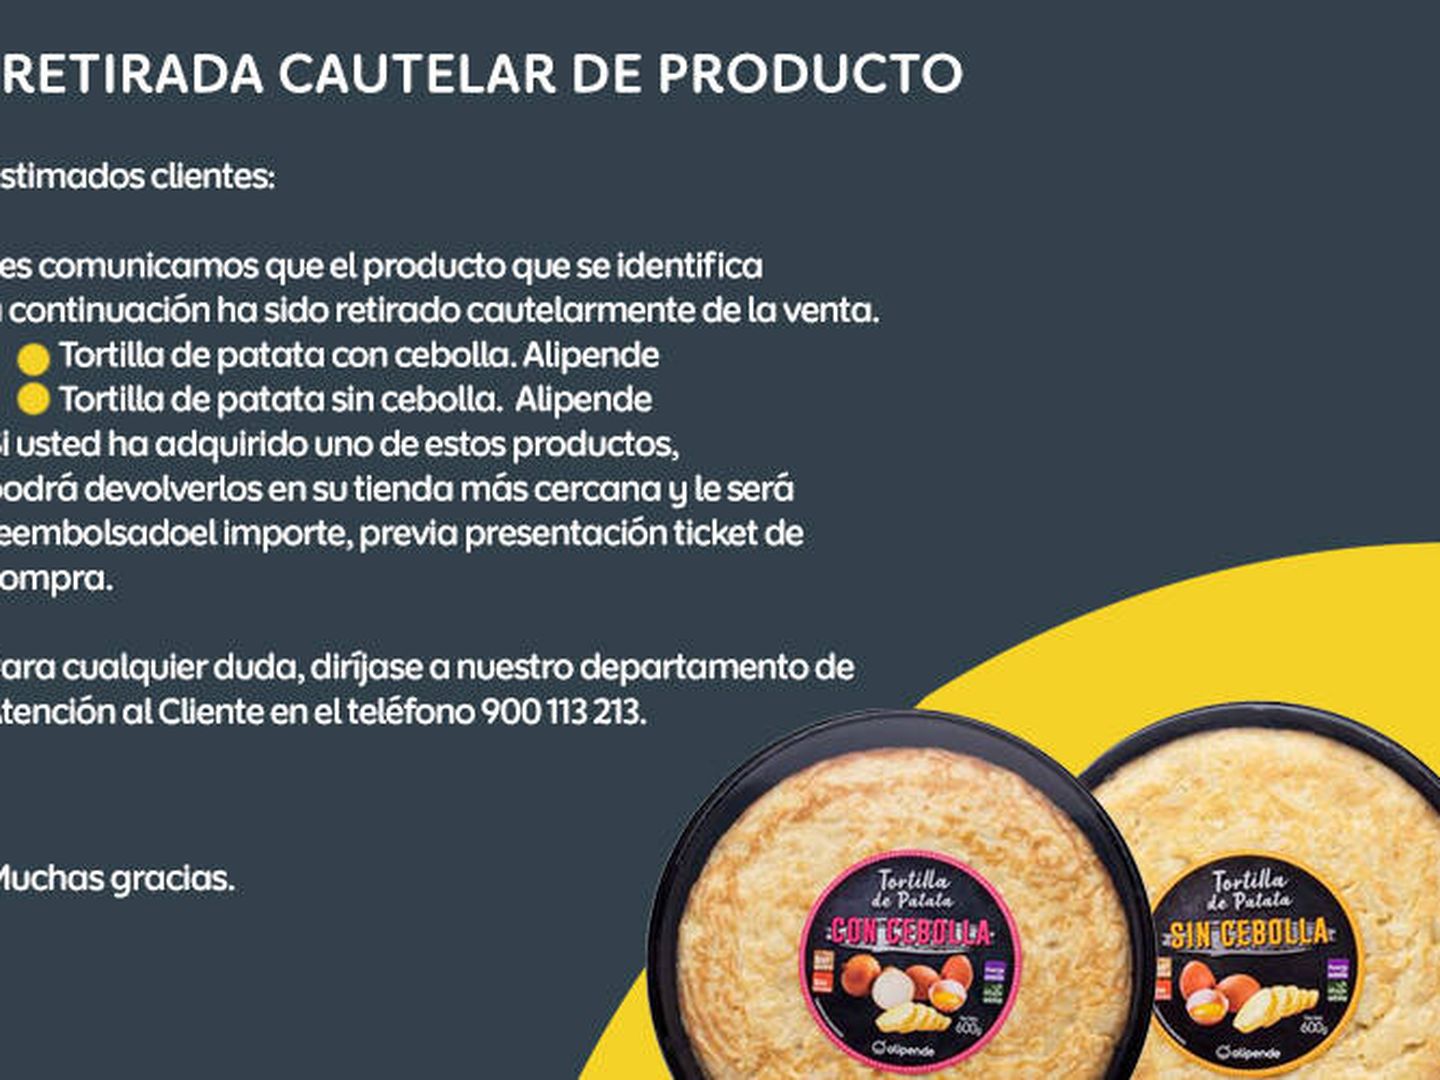 Estas son las dos variedades de tortilla de patatas de Alipende afectadas, con y sin cebolla. (Ahorramás.com)